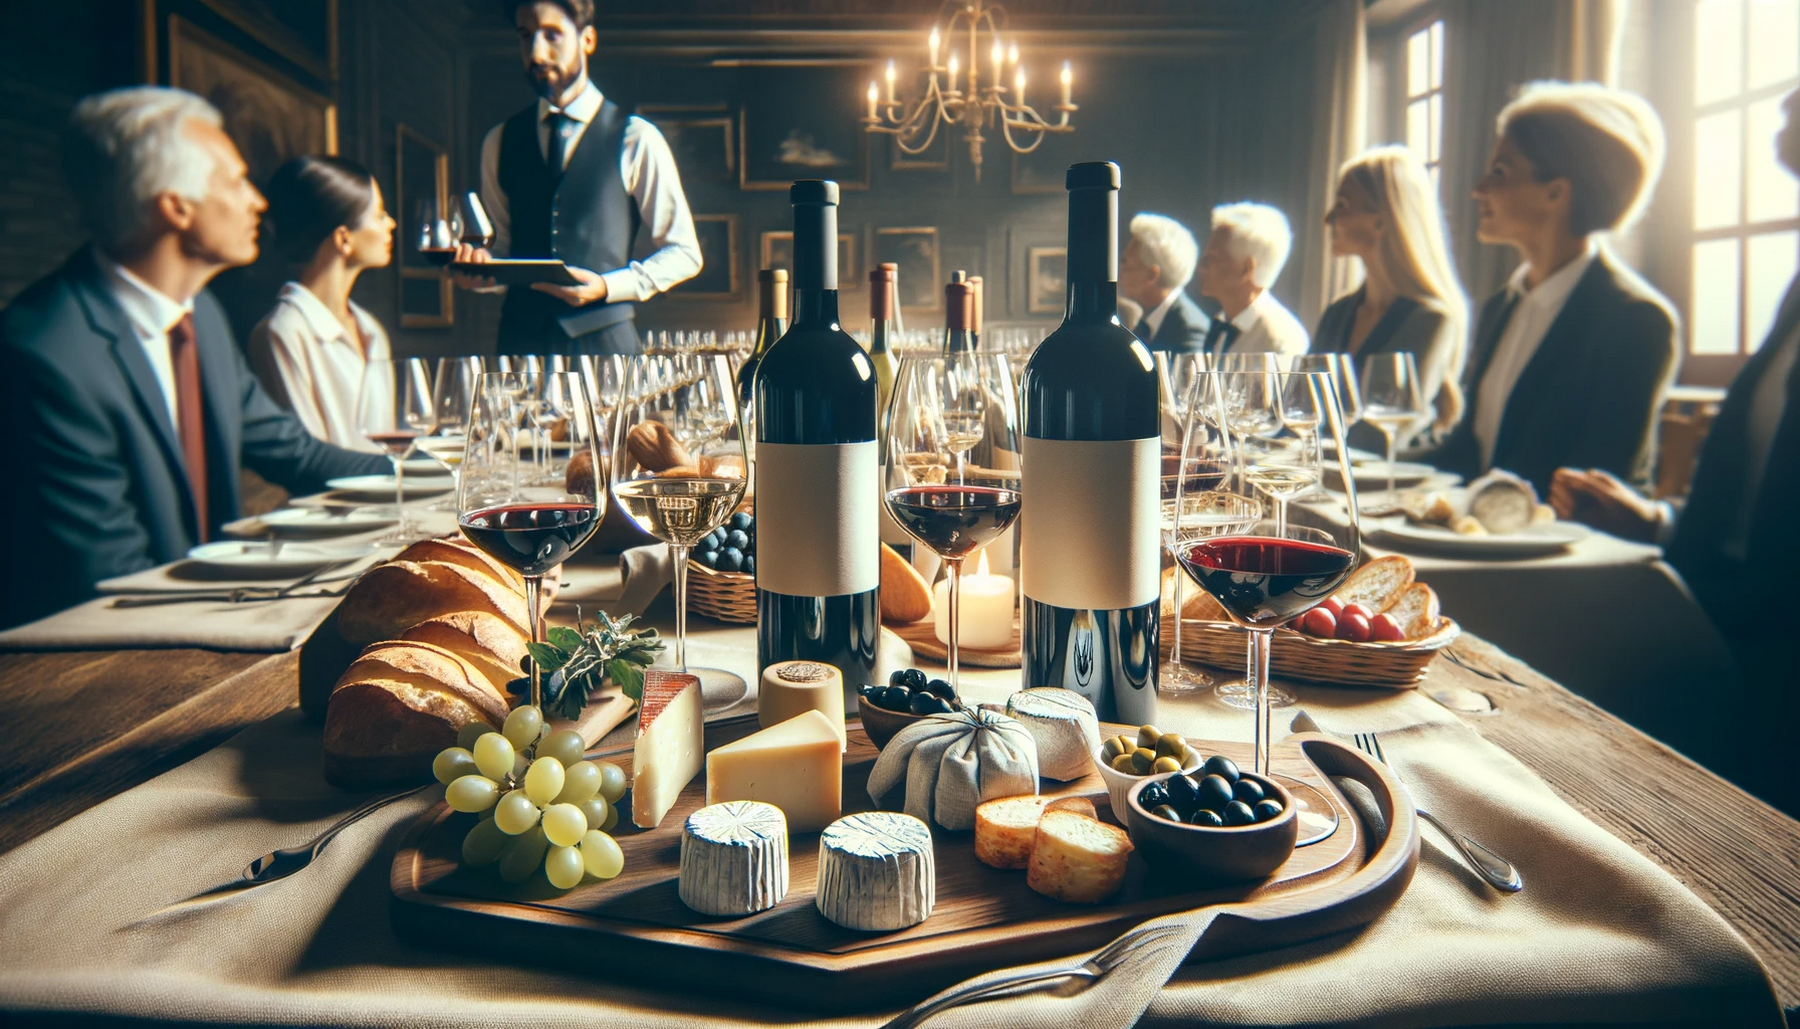 кейтеринг и дегустации: создание опыта для гурманов и ценителей вина